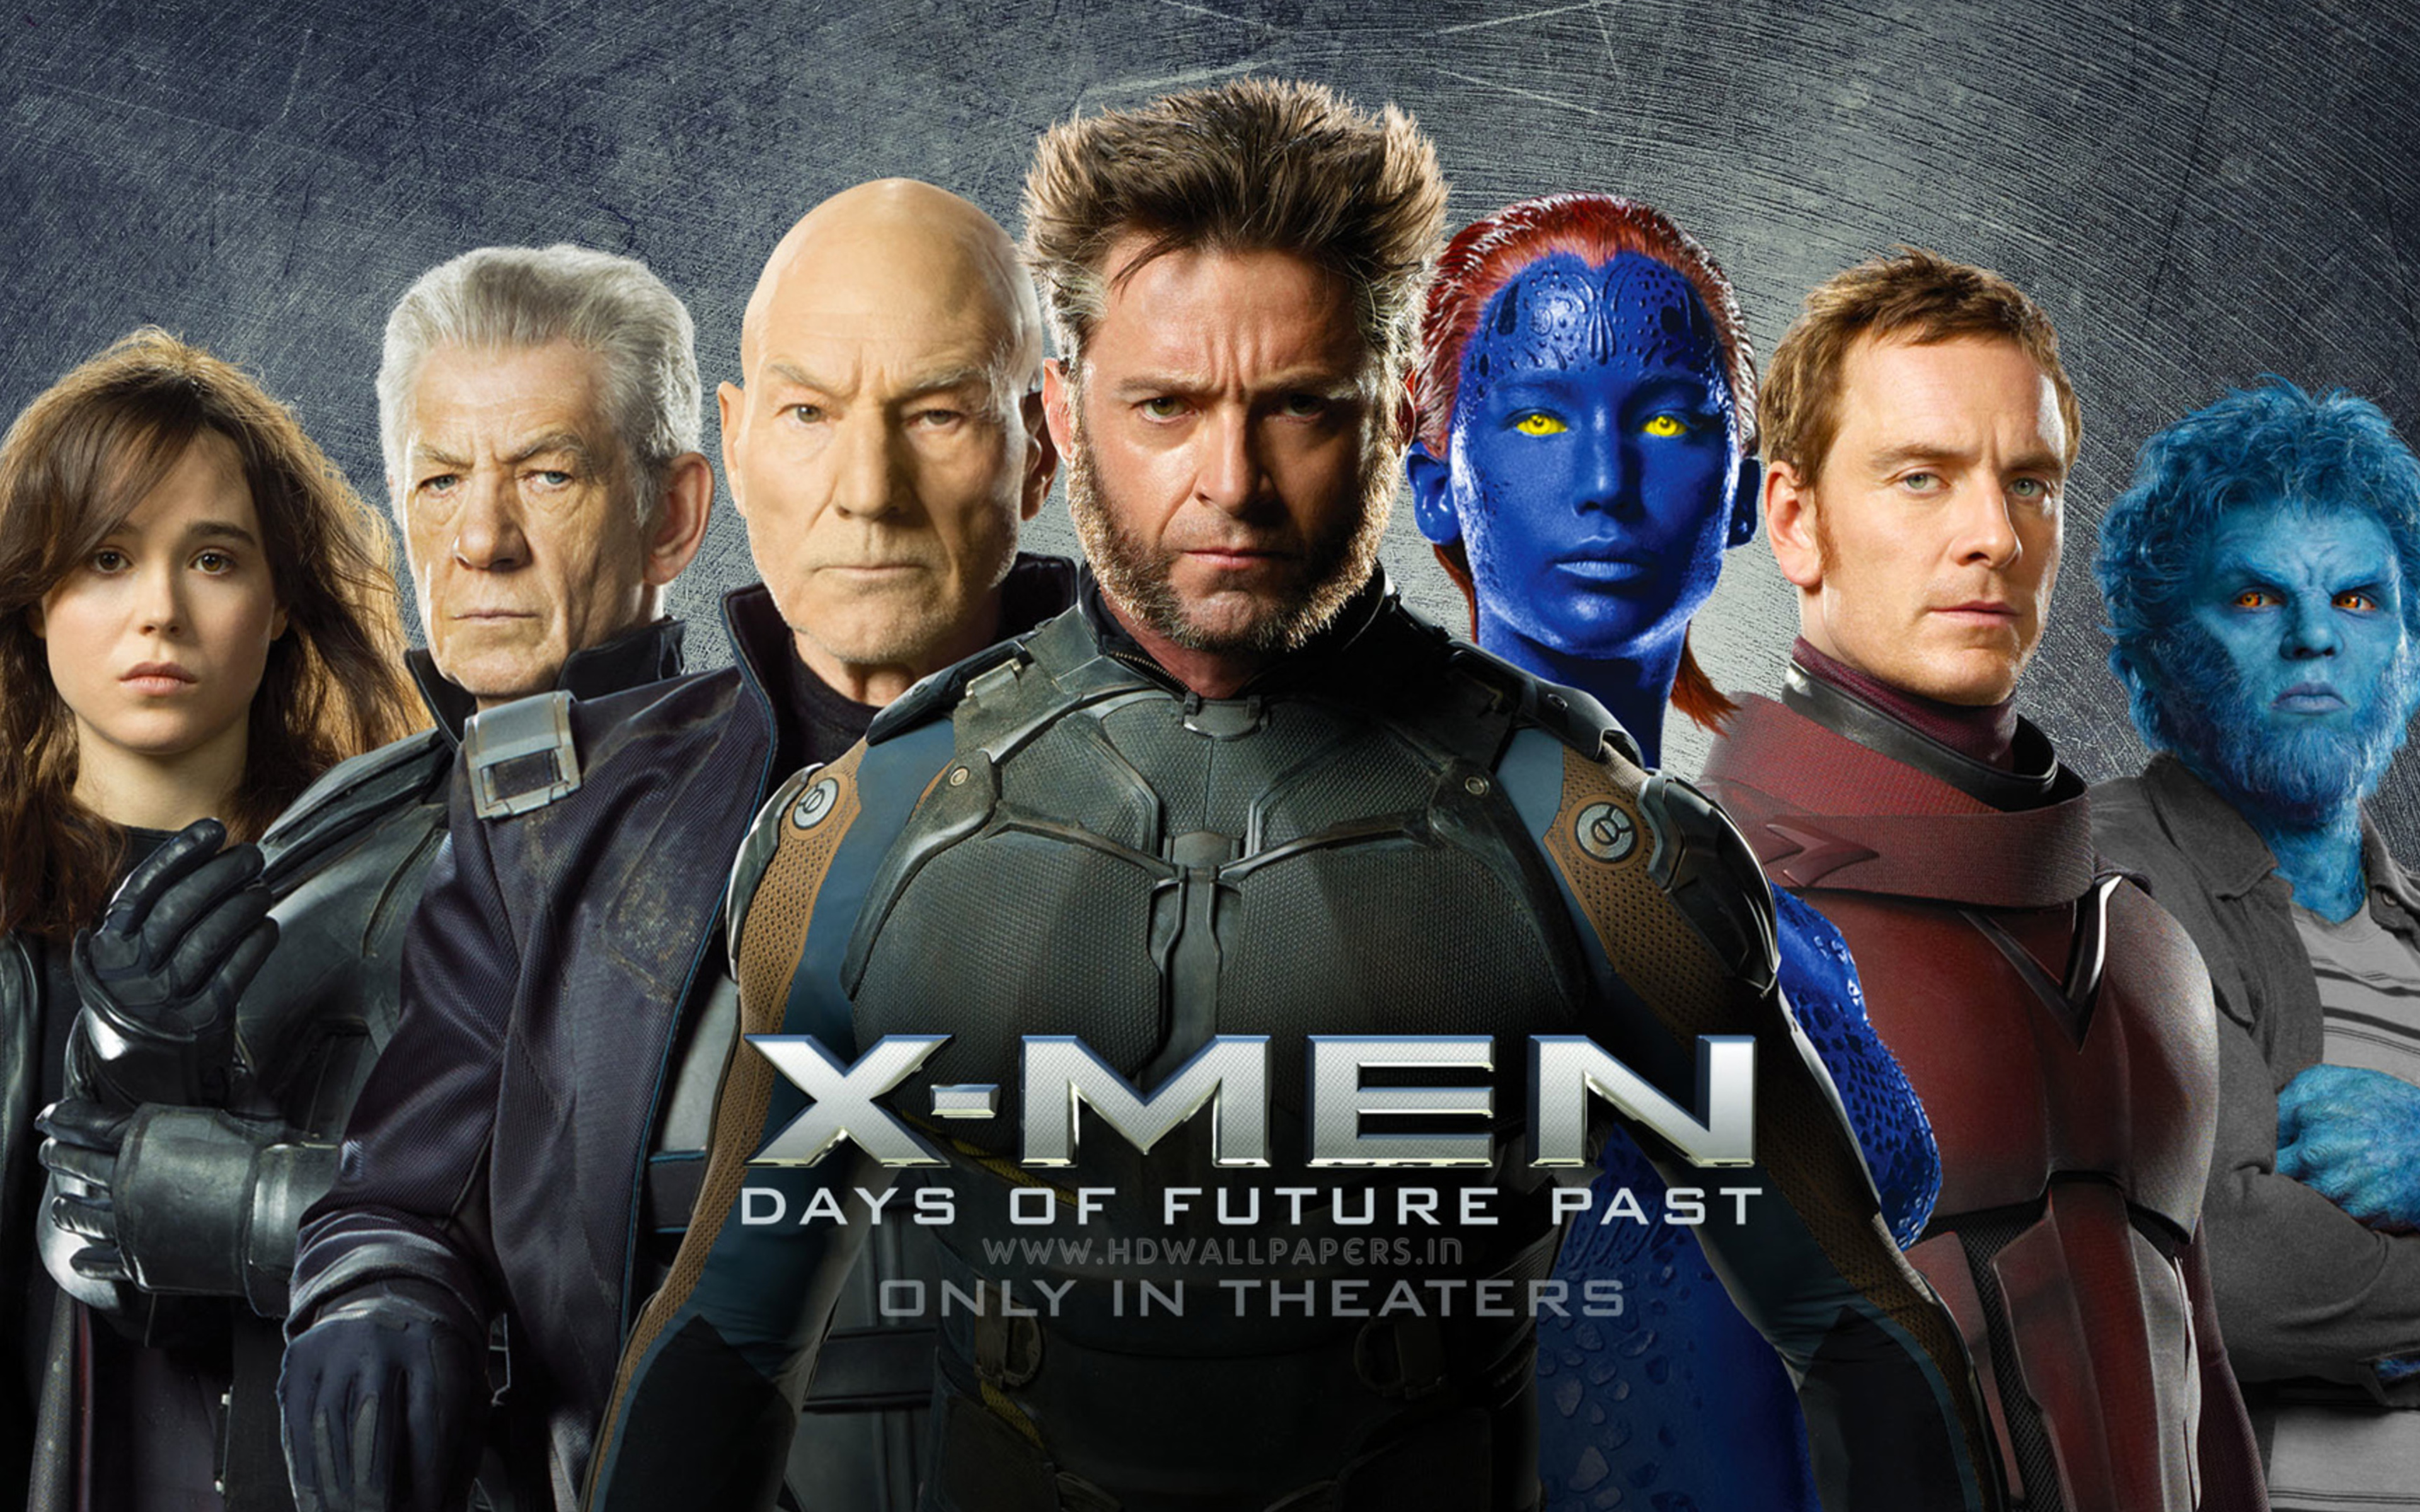 X men 1997. Люди Икс - дни минувшего будущего [x-men - Days of Future past] 2014 poster. X-men 2000. X-men 2000 постеры. Люди Икс 2022.